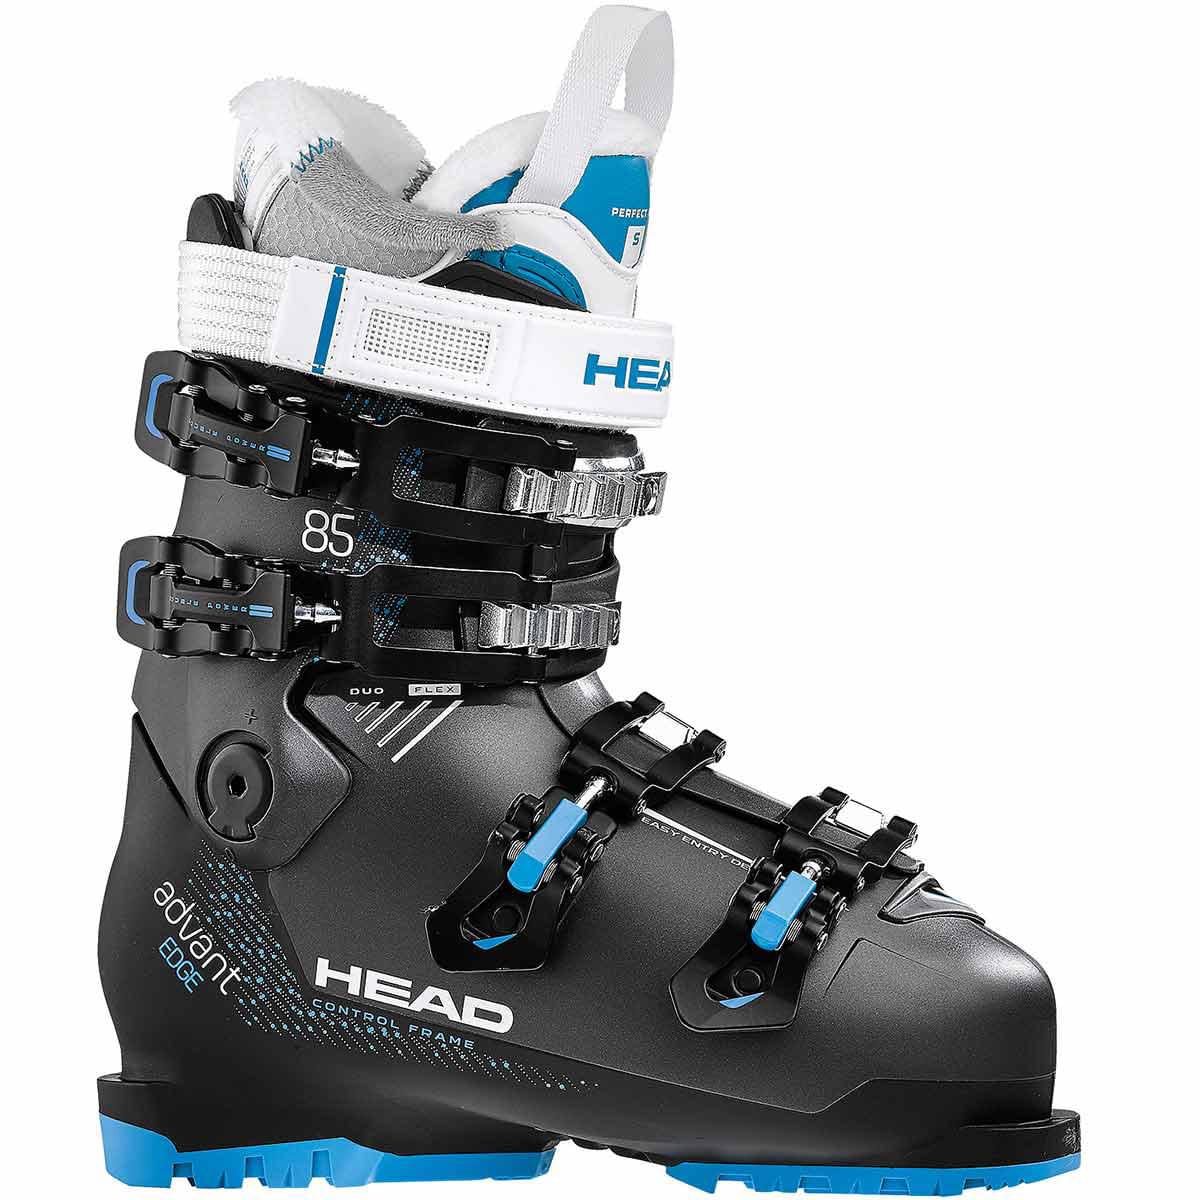 Head Advant Edge 85 Women's Ski Boot